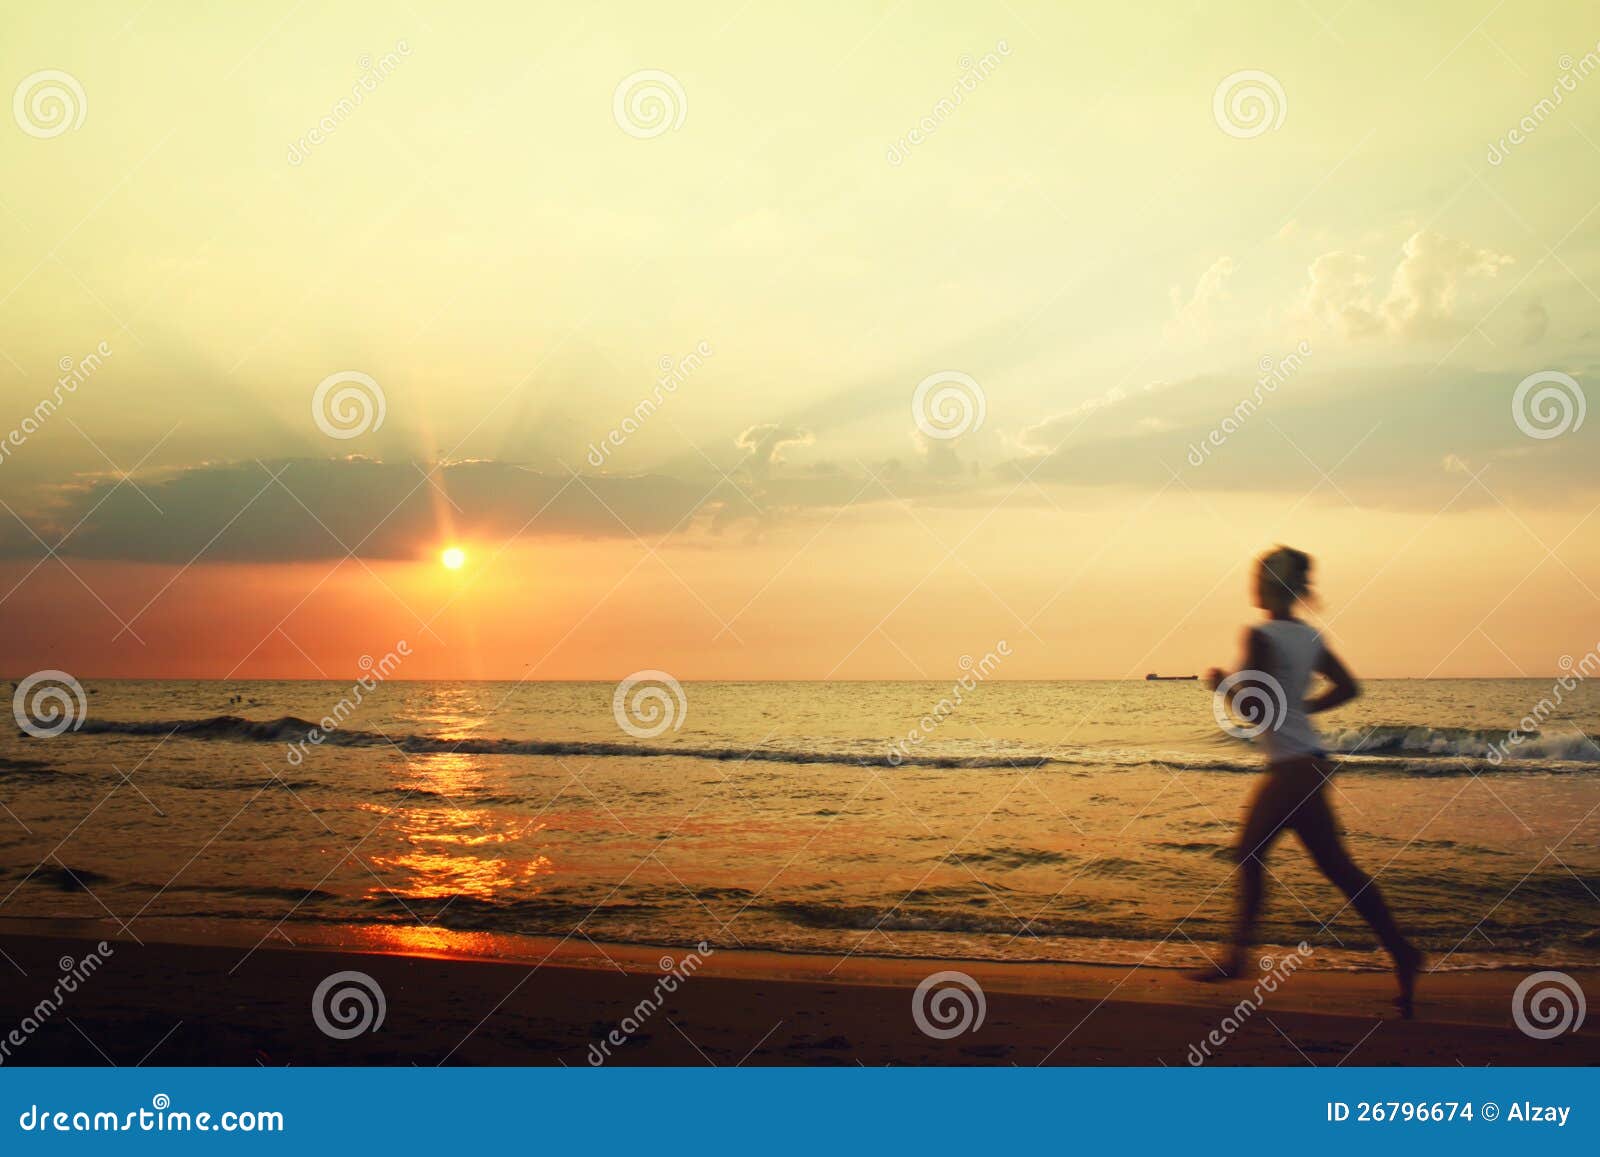 jog on the beach